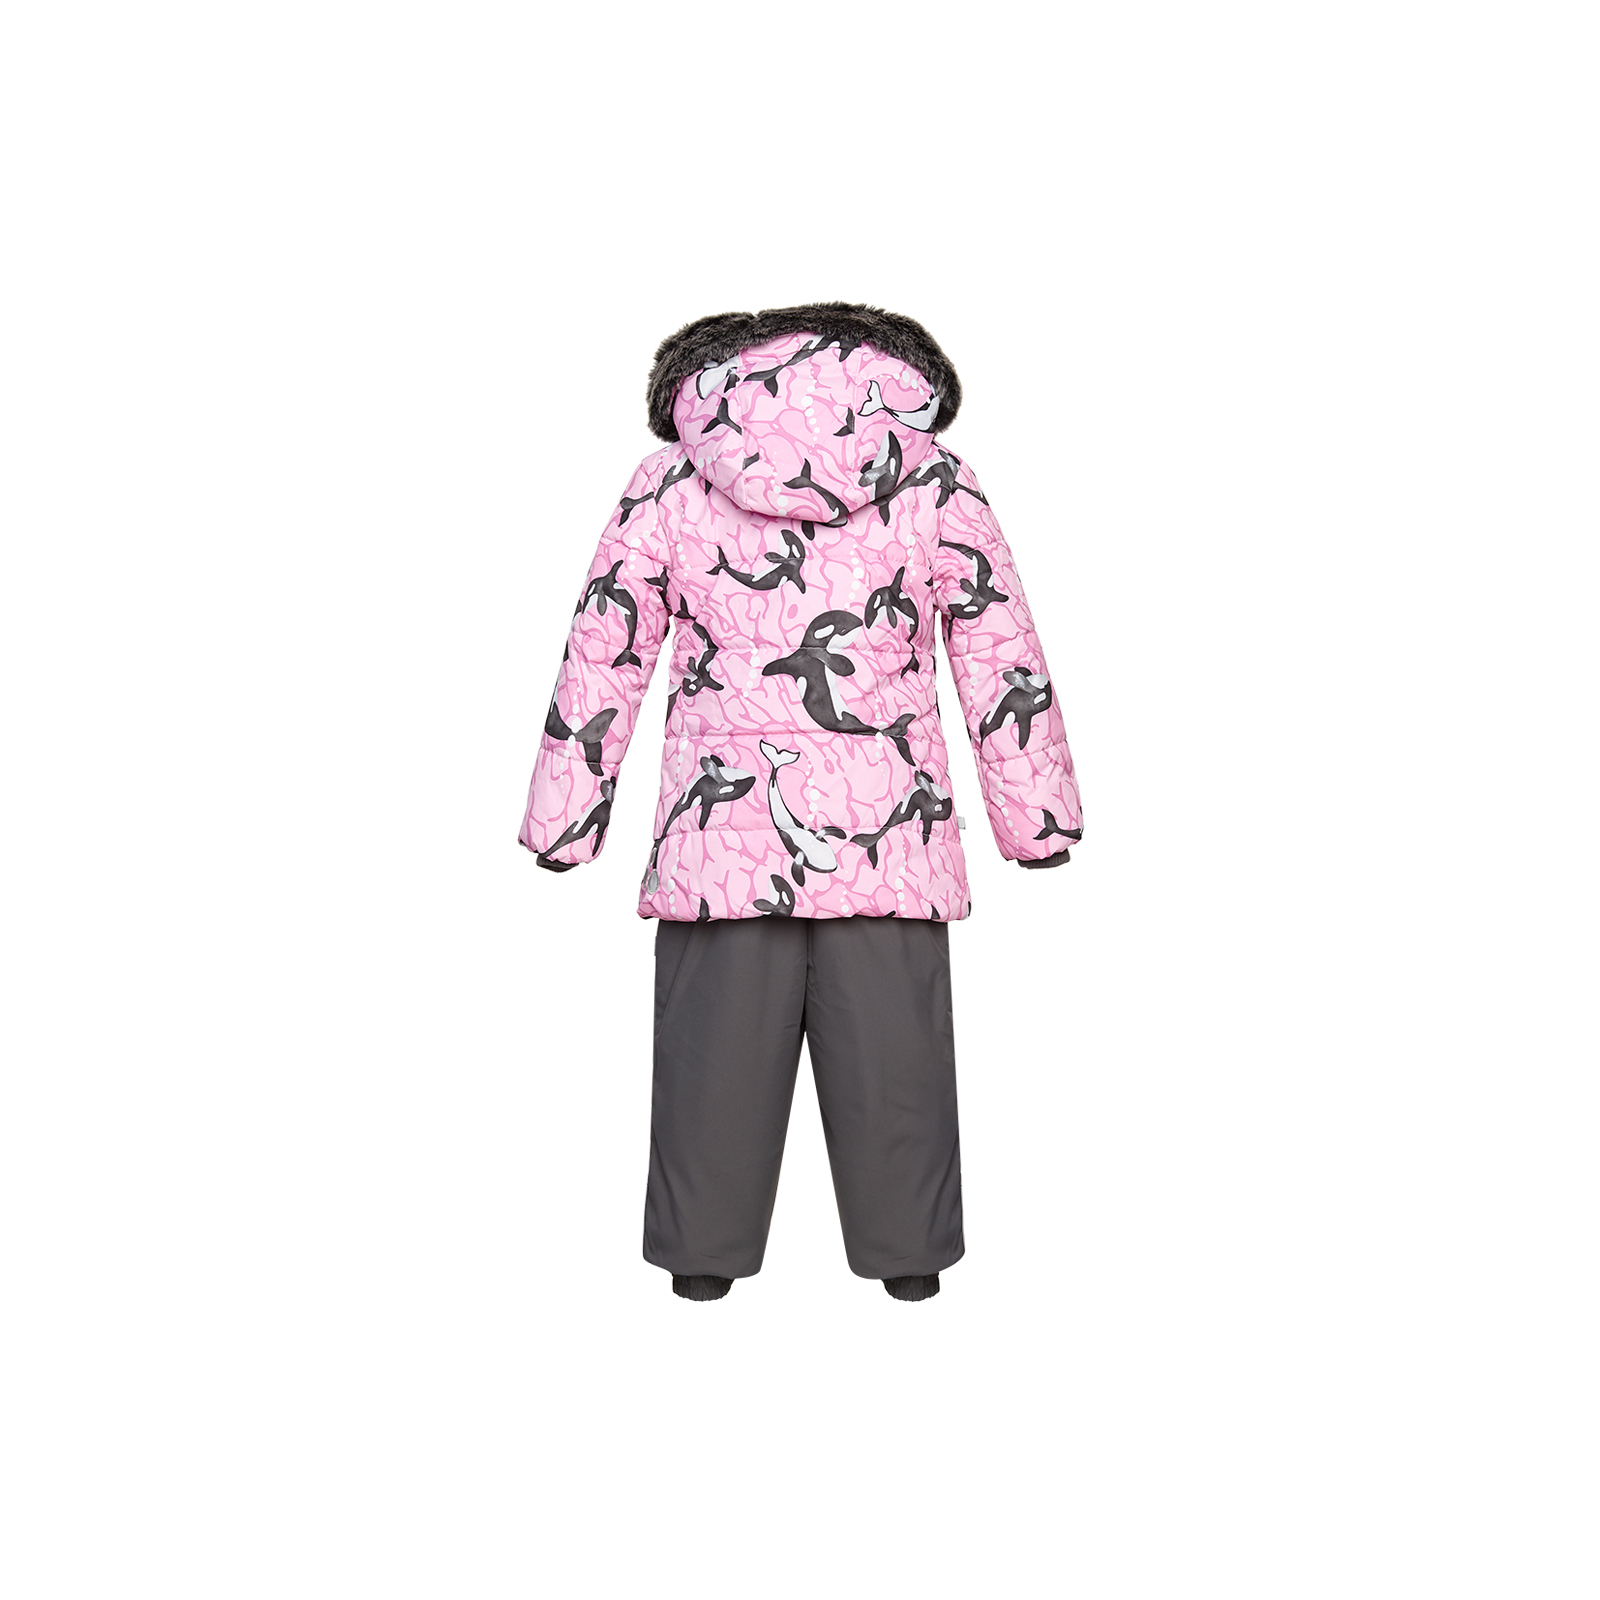 Комплект верхней одежды Huppa BELINDA 1 45090130 cветло-розовый с принтом/серый 86 (4741468977348) изображение 2